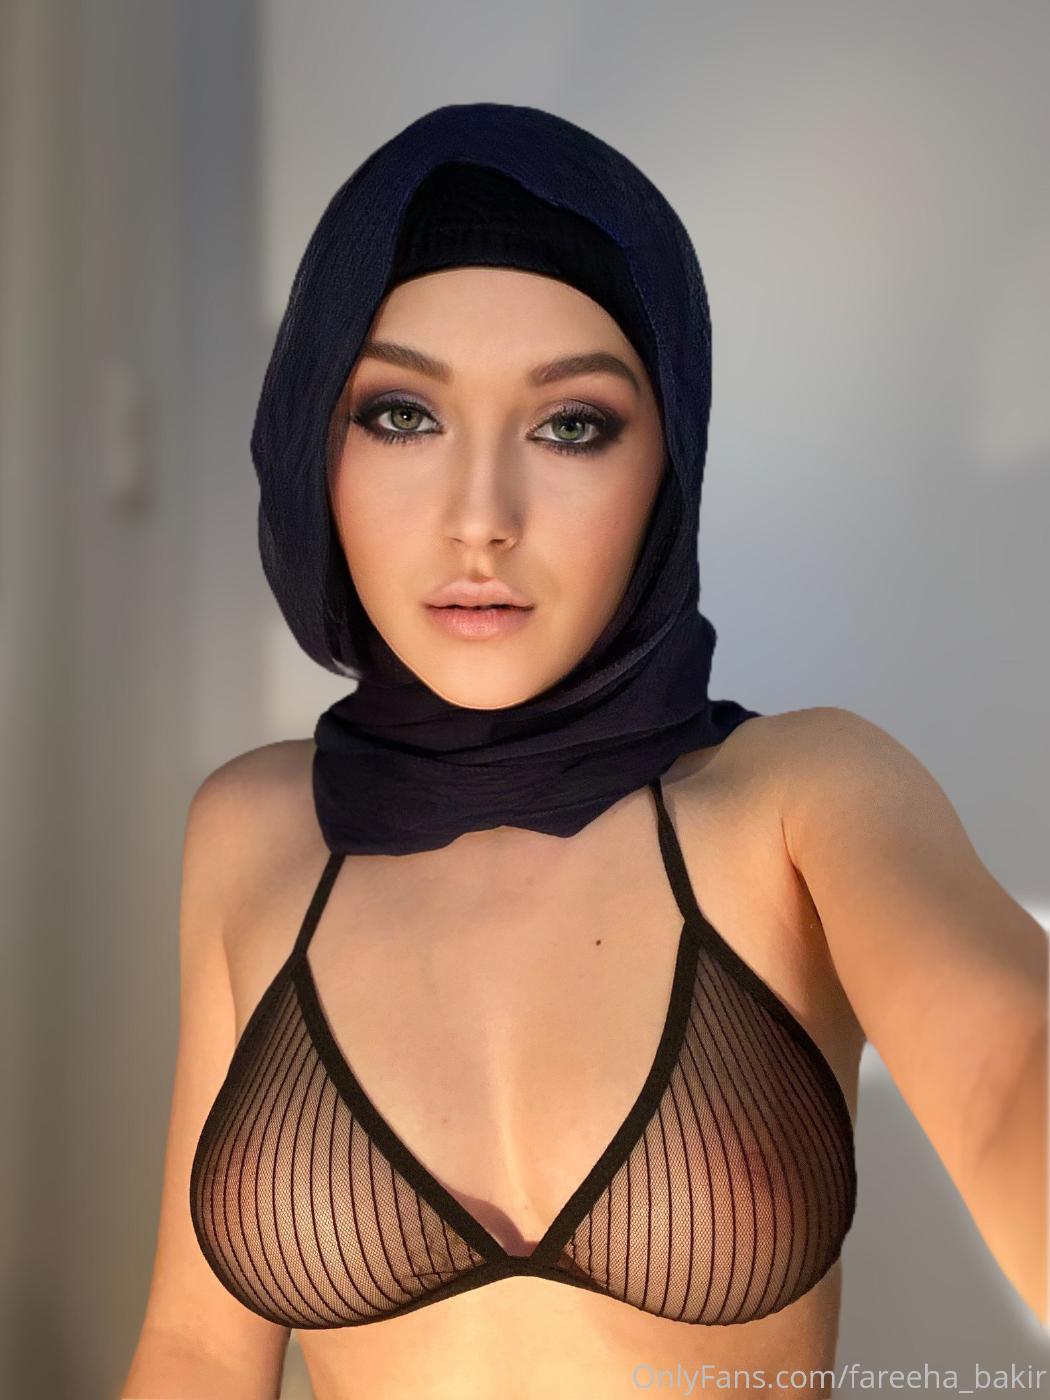 fareeha bakir nude hijab strip onlyfans set leaked LHCEUB